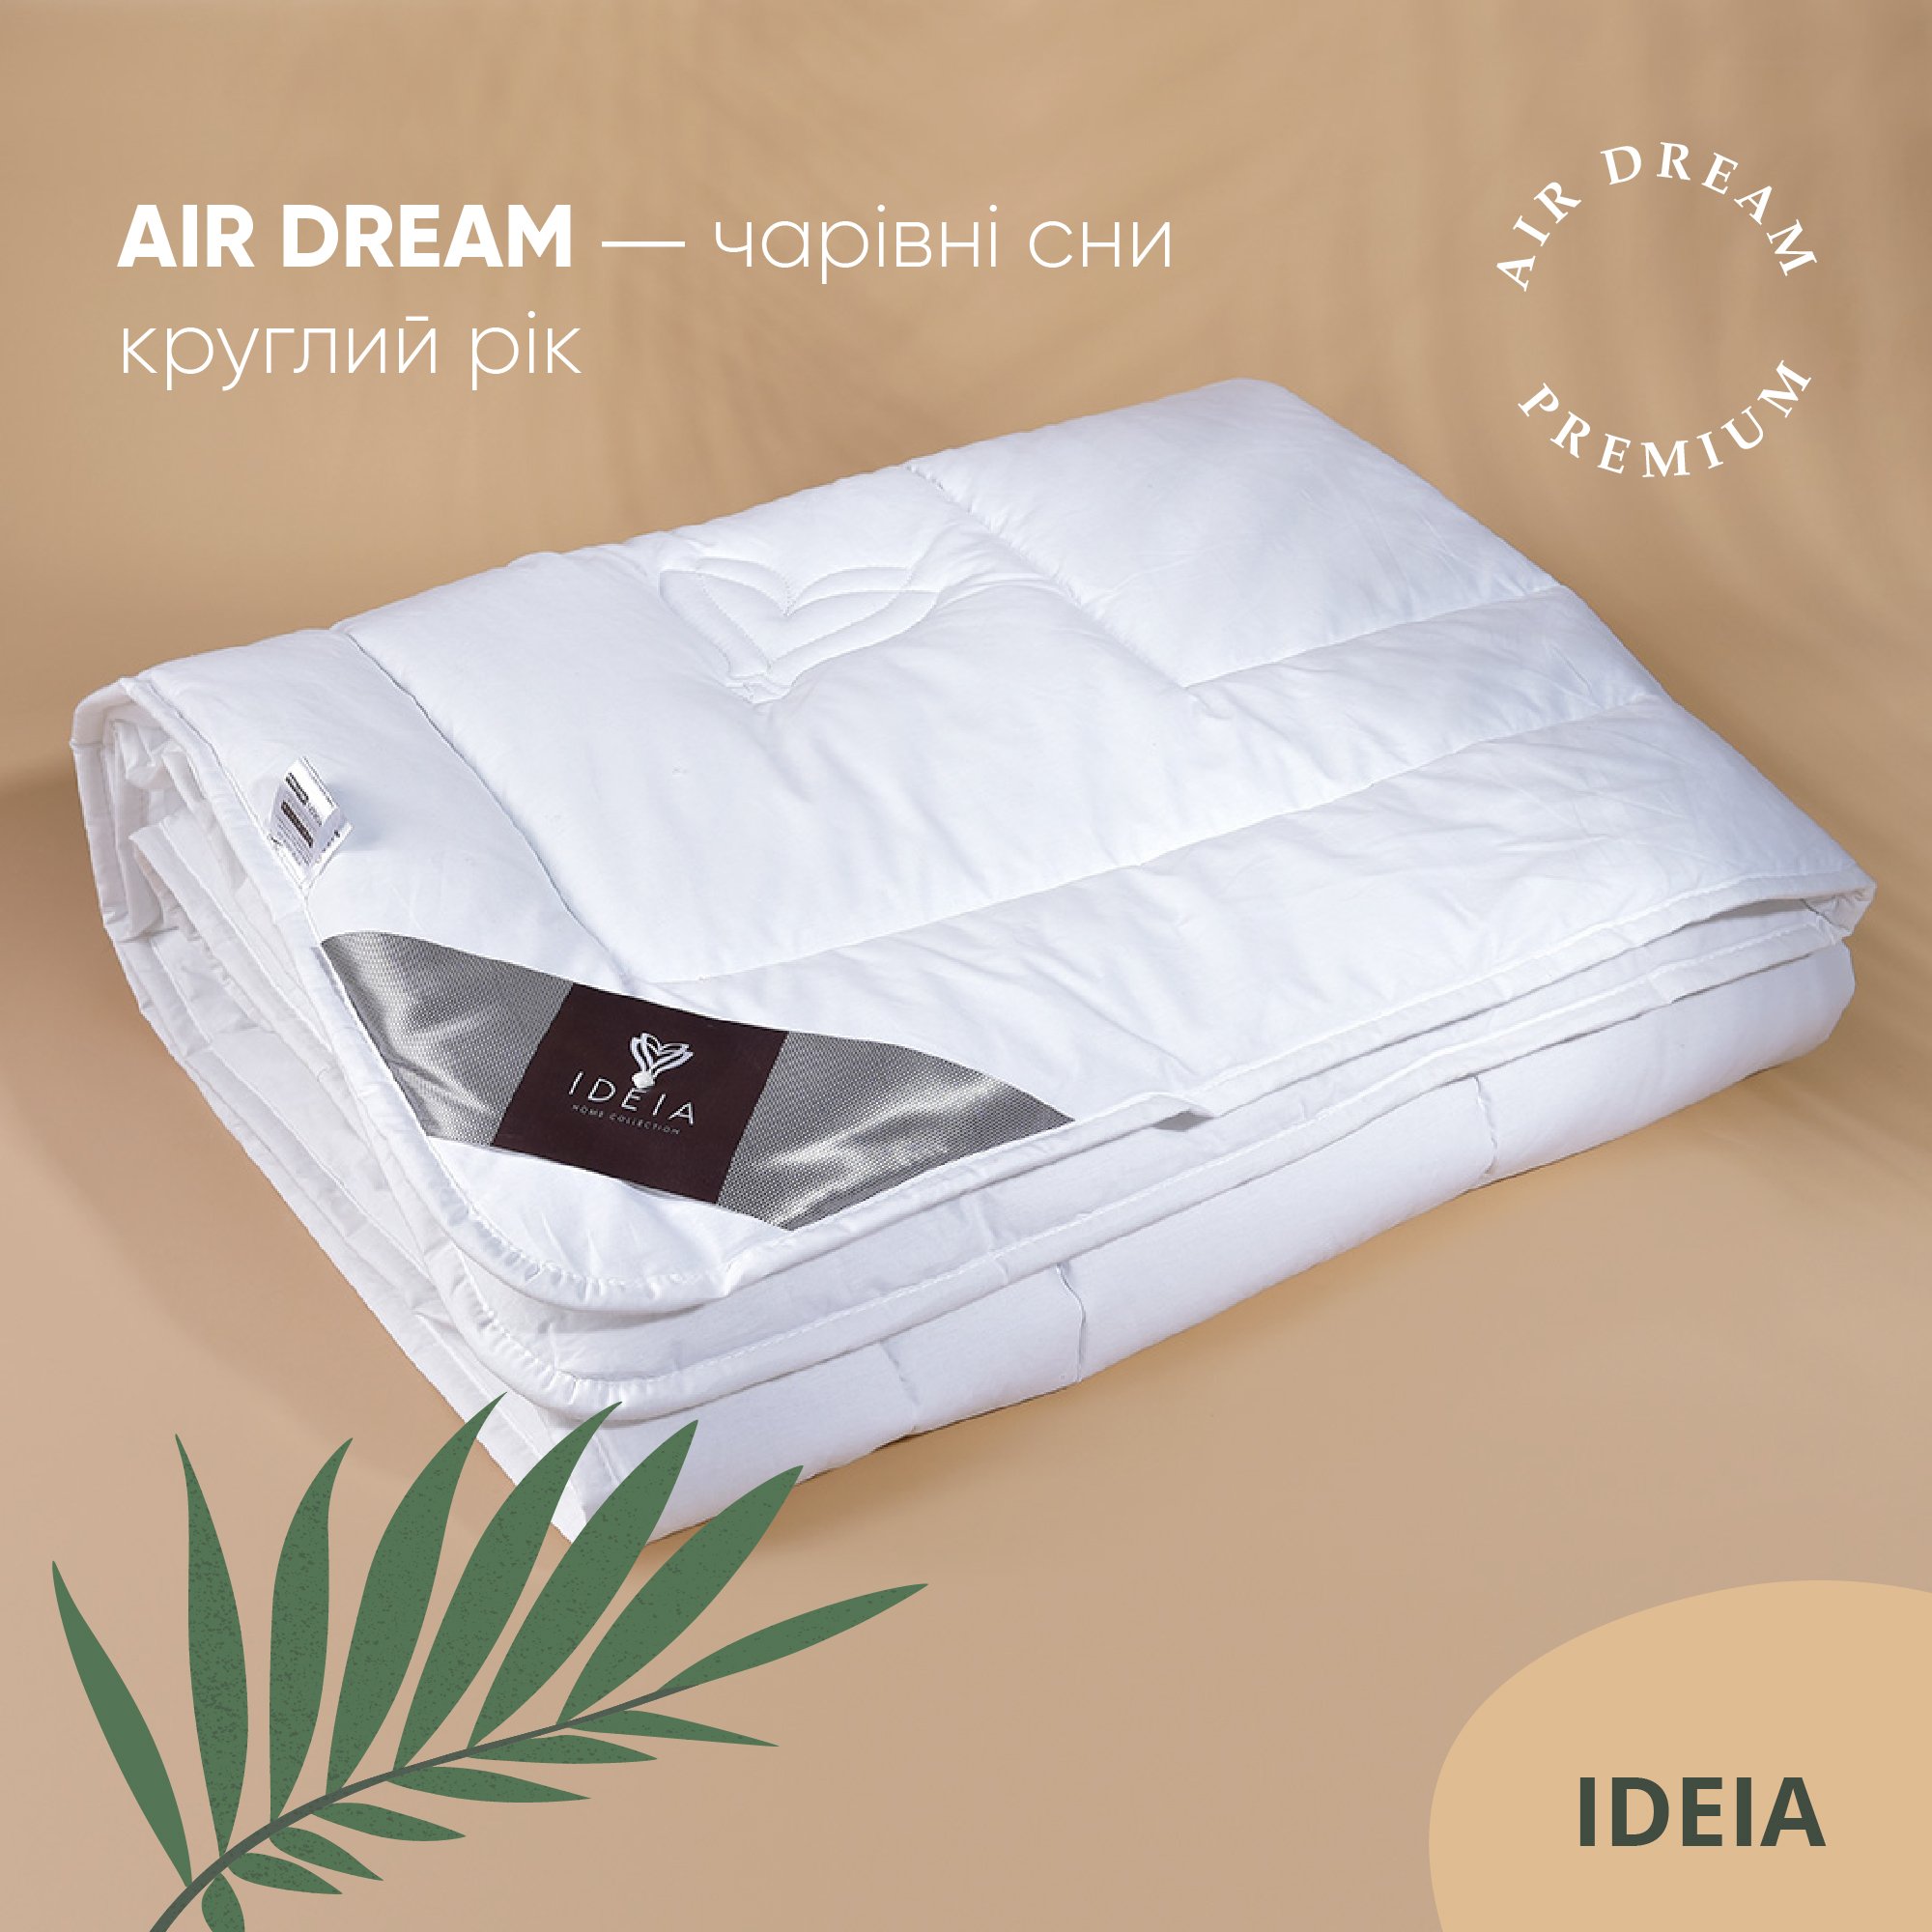 Одеяло Ideia Air Dream Premium зимнее, 215х155, белый (8-11694) - фото 7